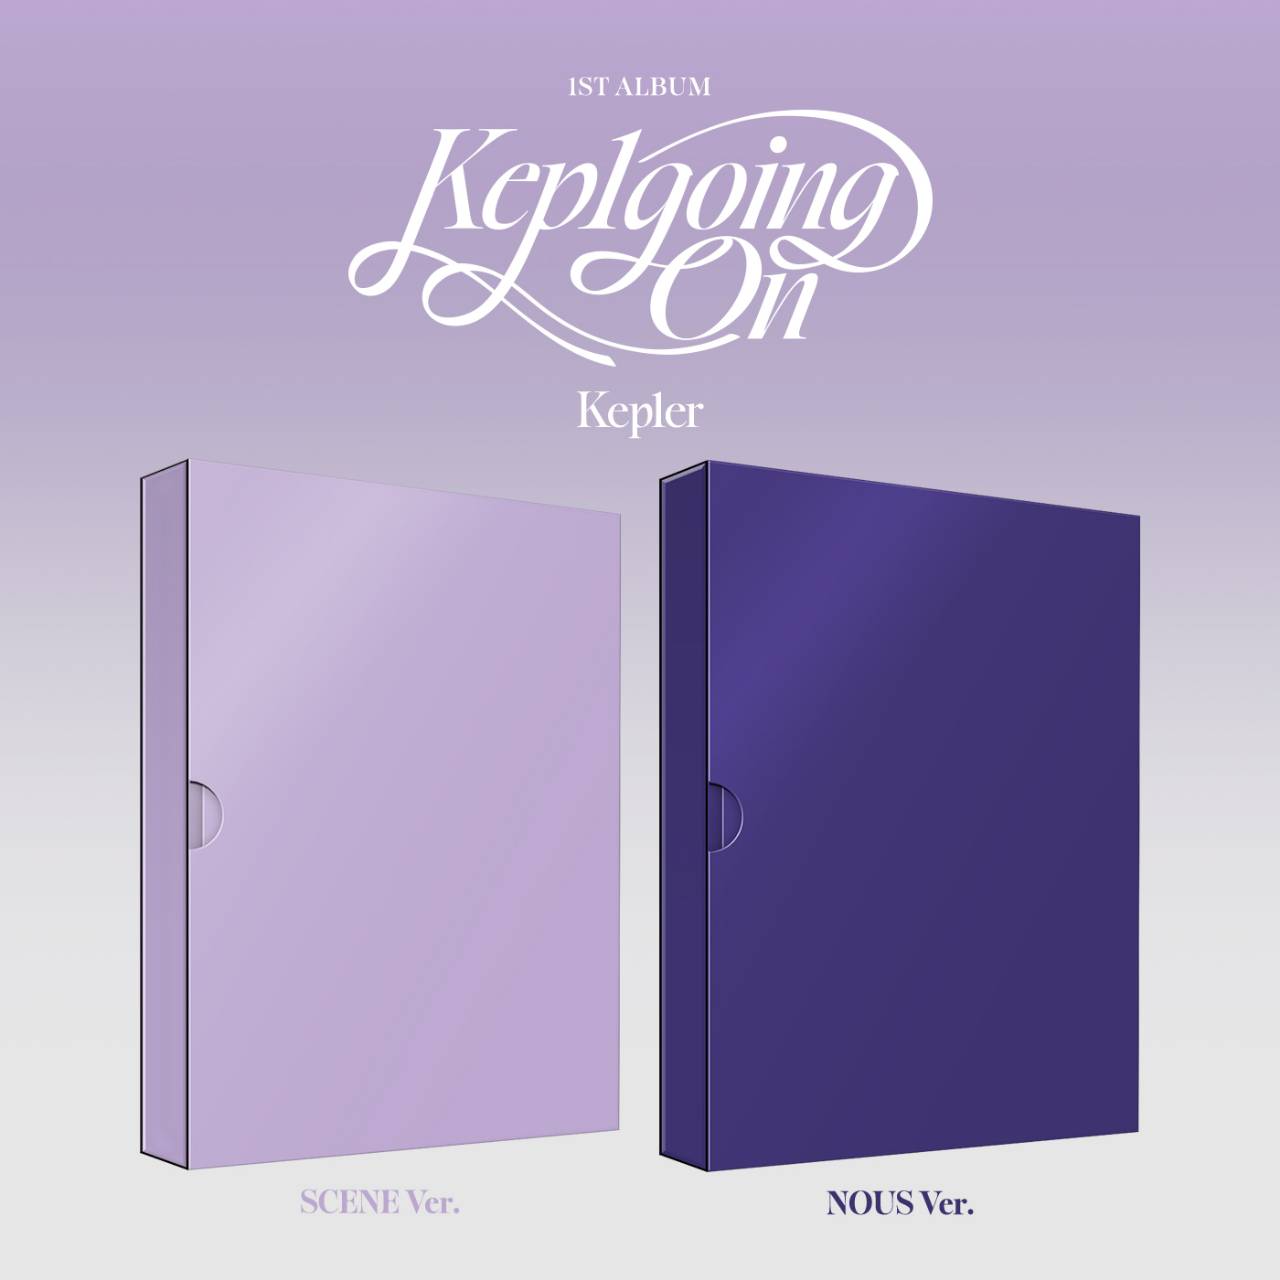 Kep1er 1st Album <Kep1going On> 日本限定ショップ別購入特典が決定 